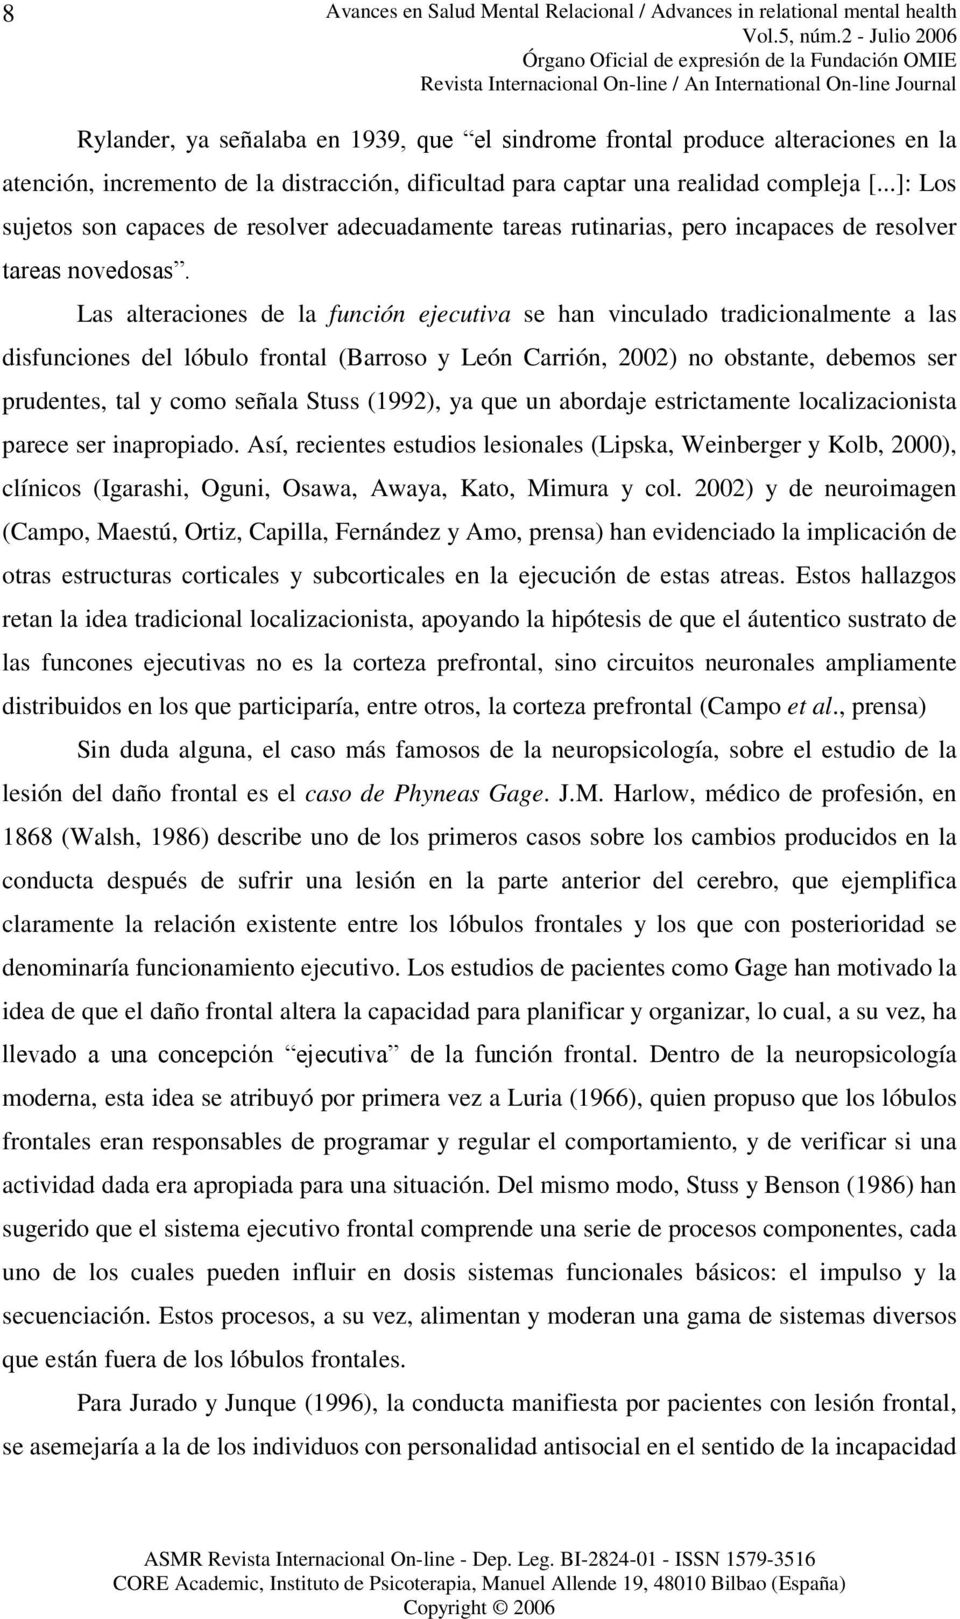 Las alteraciones de la función ejecutiva se han vinculado tradicionalmente a las disfunciones del lóbulo frontal ( Barroso y León Carrión, 2002) no obstante, debemos ser prudentes, tal y como señala